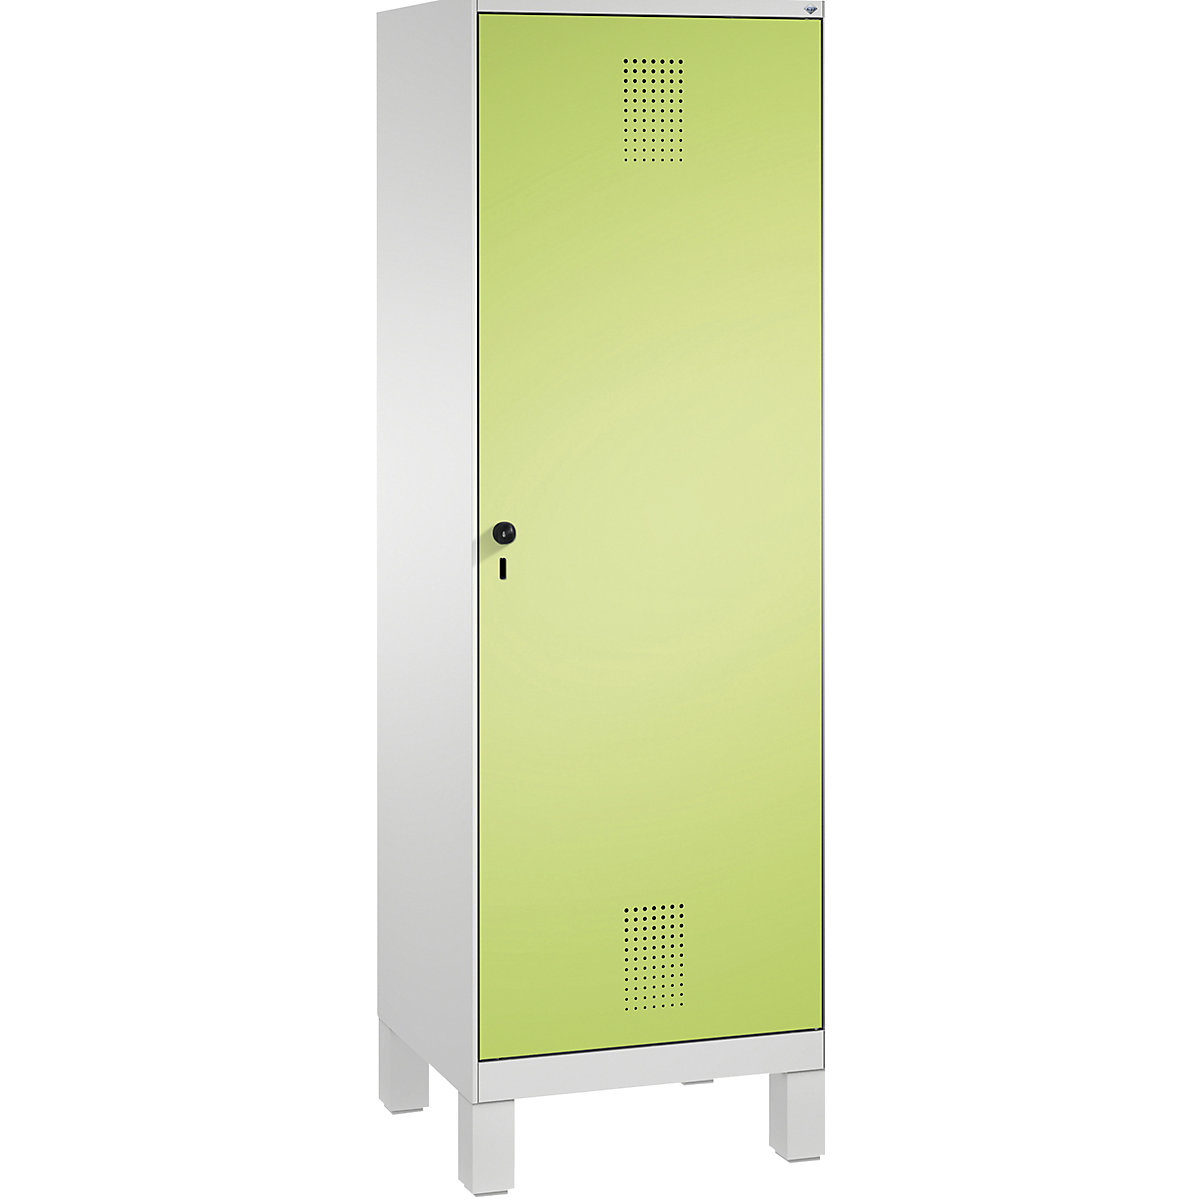 Šatní skříň s nohami EVOLO s dveřmi přes 2 oddíly – C+P, 2 oddíly, 1 dveře, šířka oddílu 300 mm, světlá šedá / viridianová zelená-6